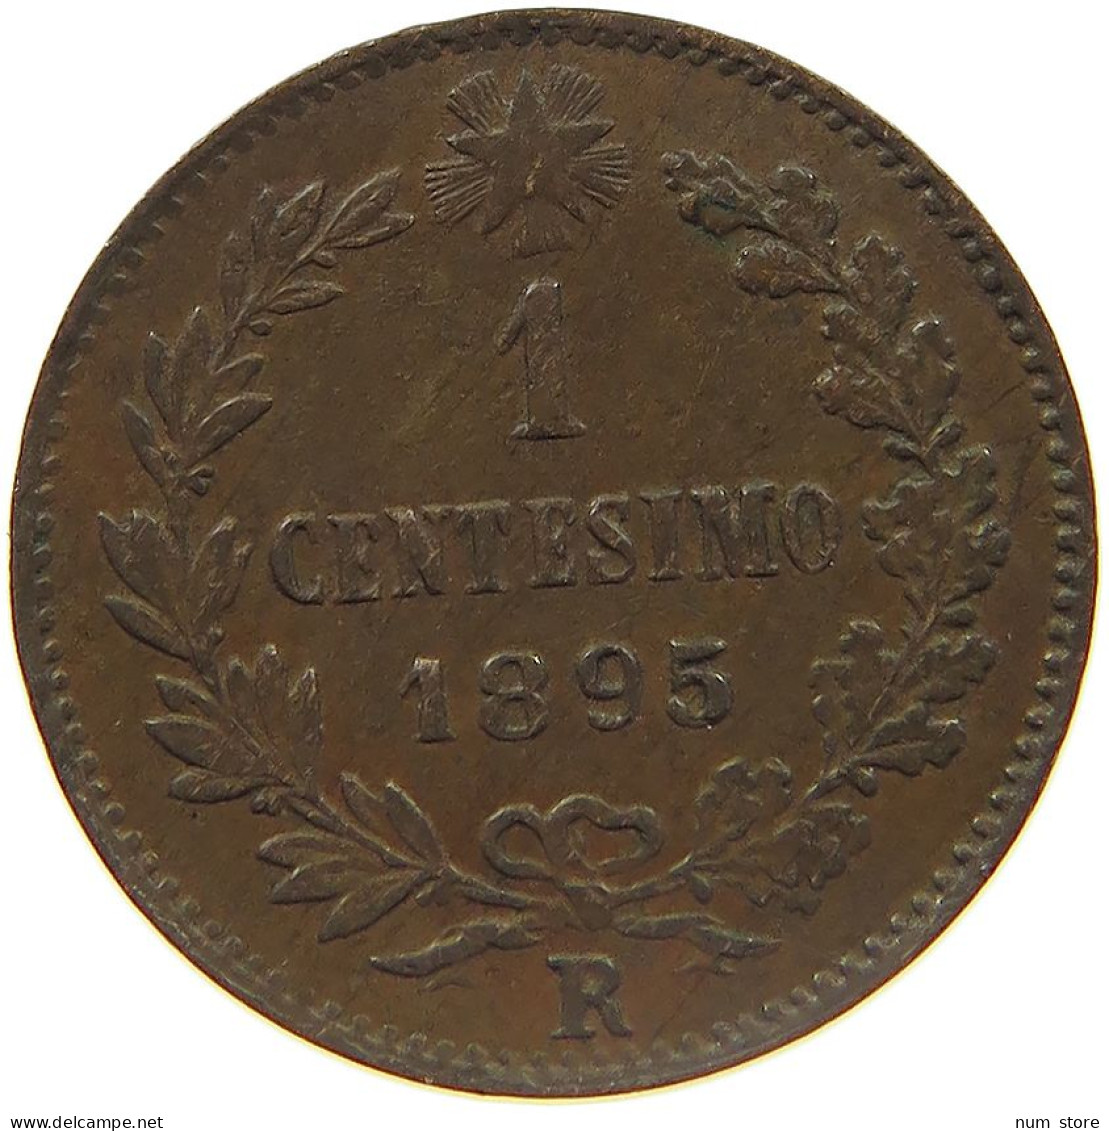 ITALY SARDINIA CENTESIMO 1895 R UMBERTO I. 1878-1900 #MA 024522 - 1878-1900 : Umberto I